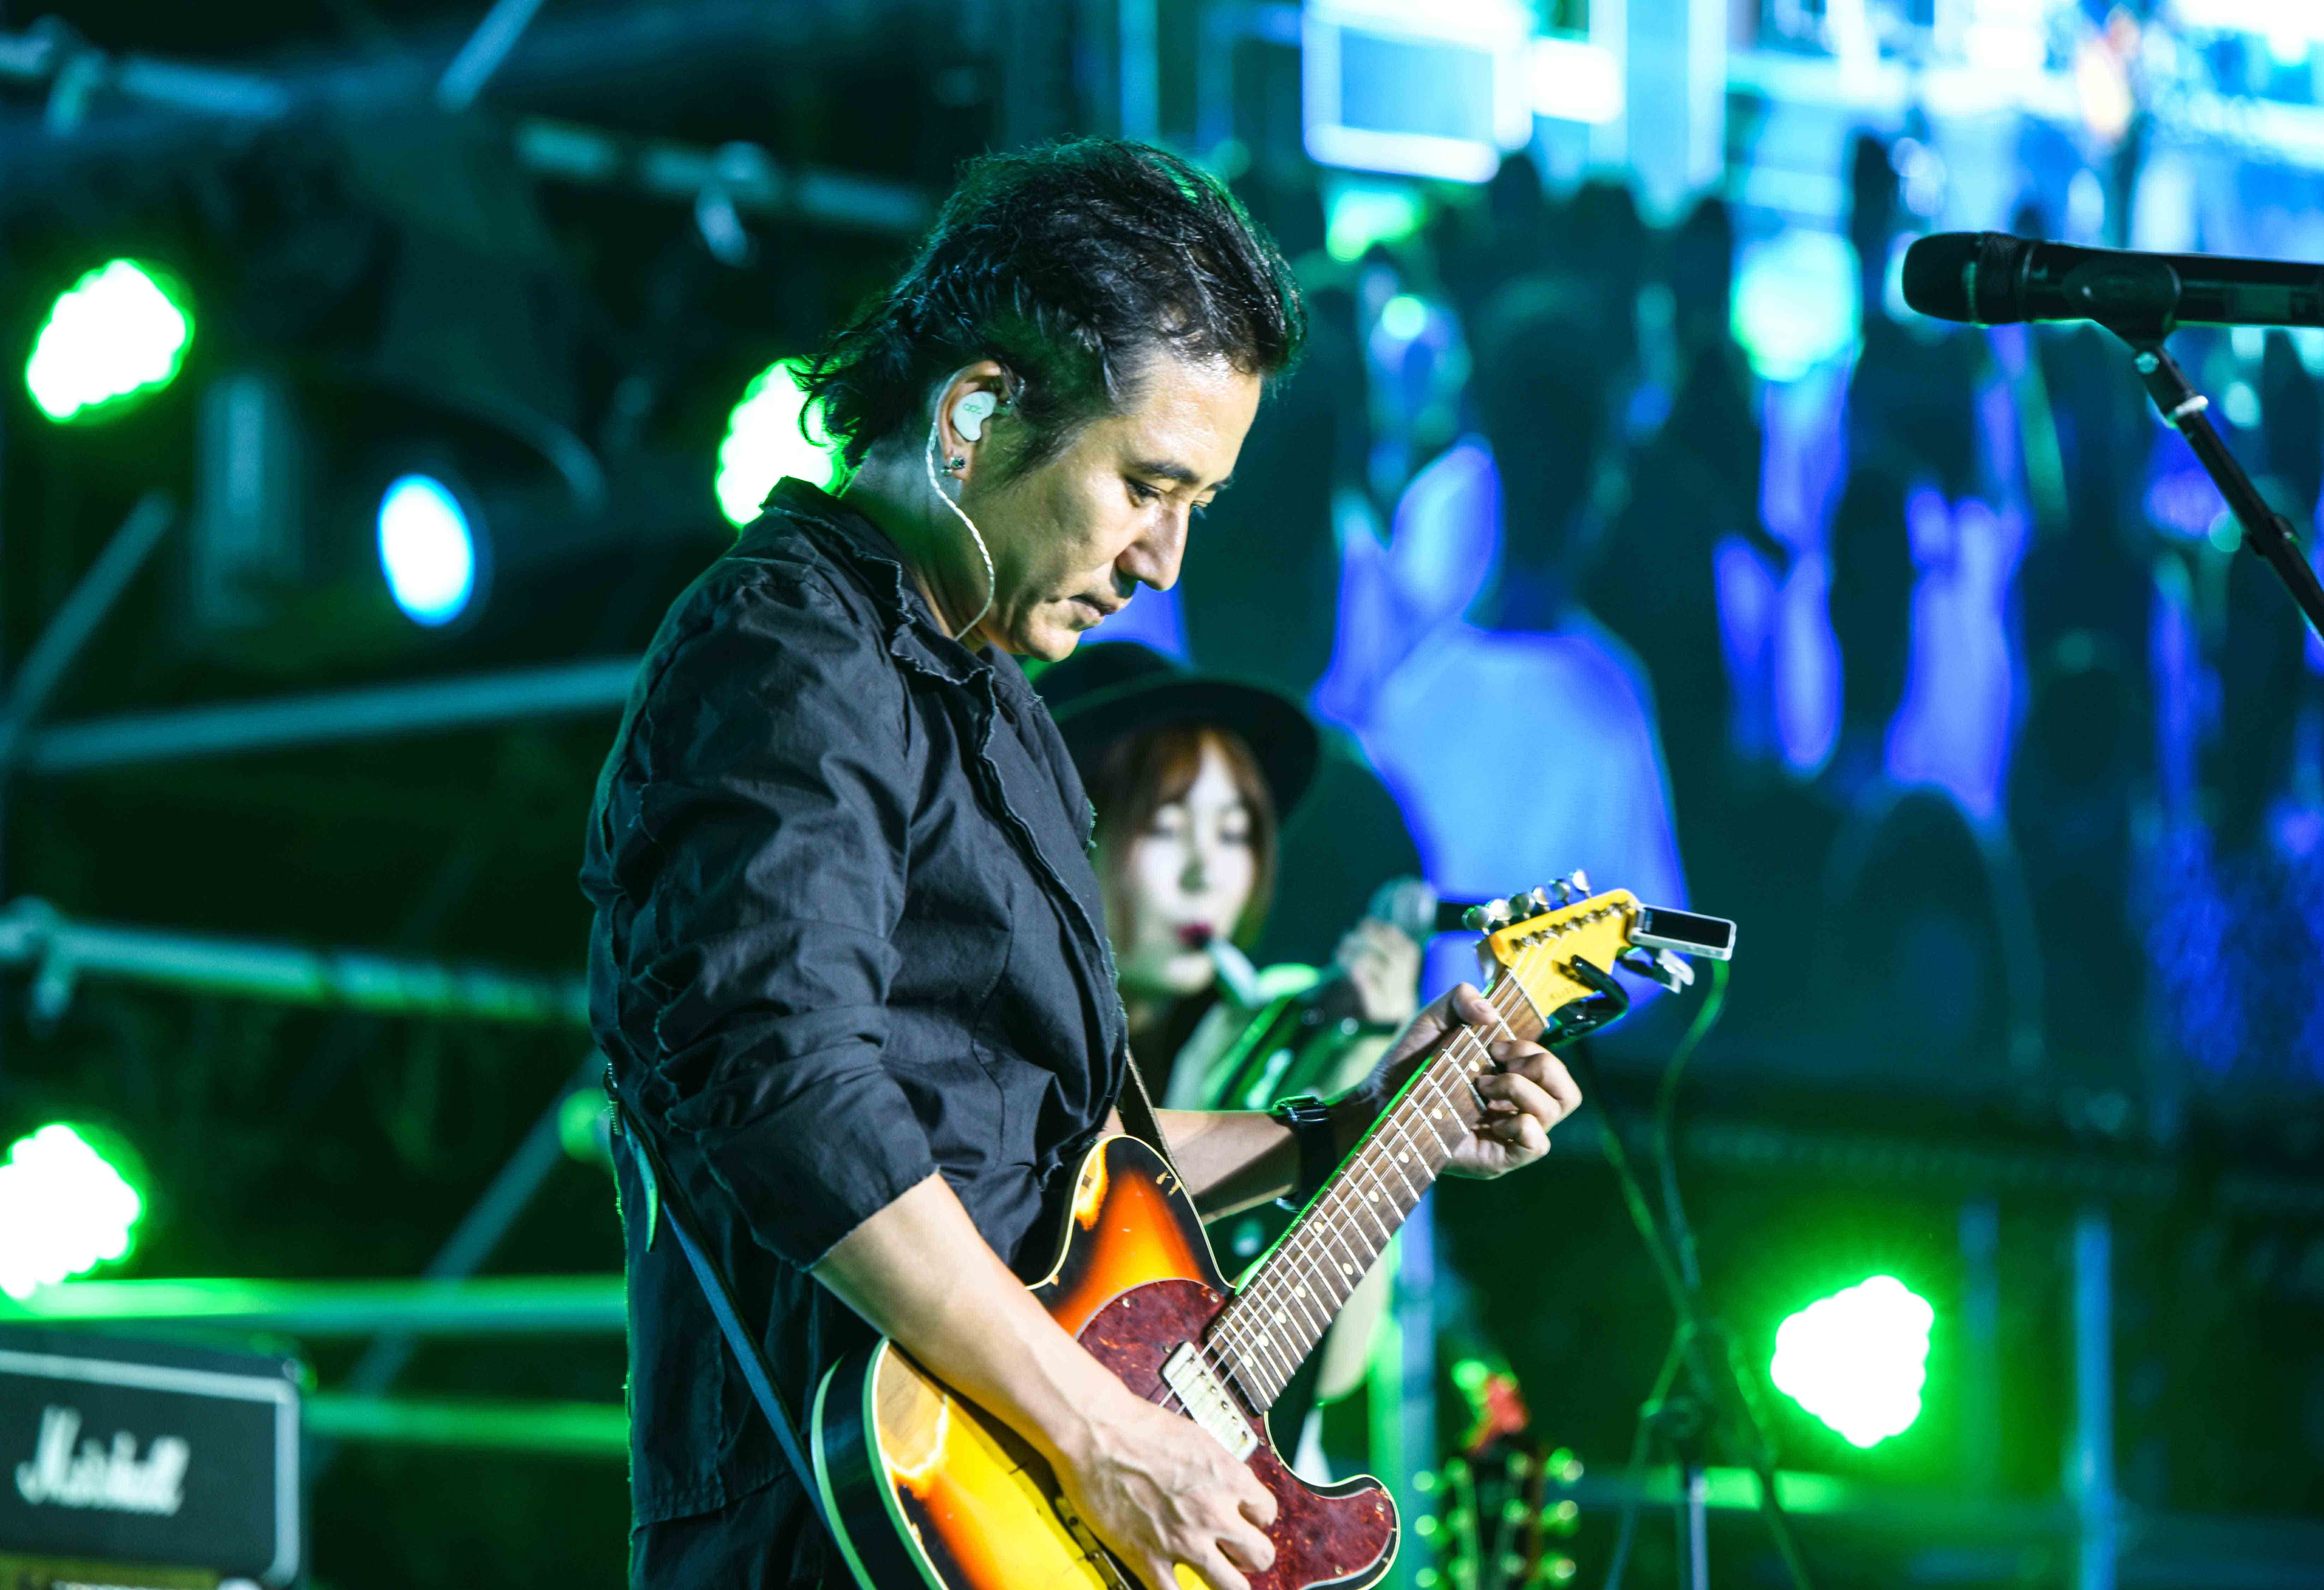 9月1日晚,杨嘉松新民谣演唱会在即墨古城鸭绿池戏台开唱,当他那蕴藏